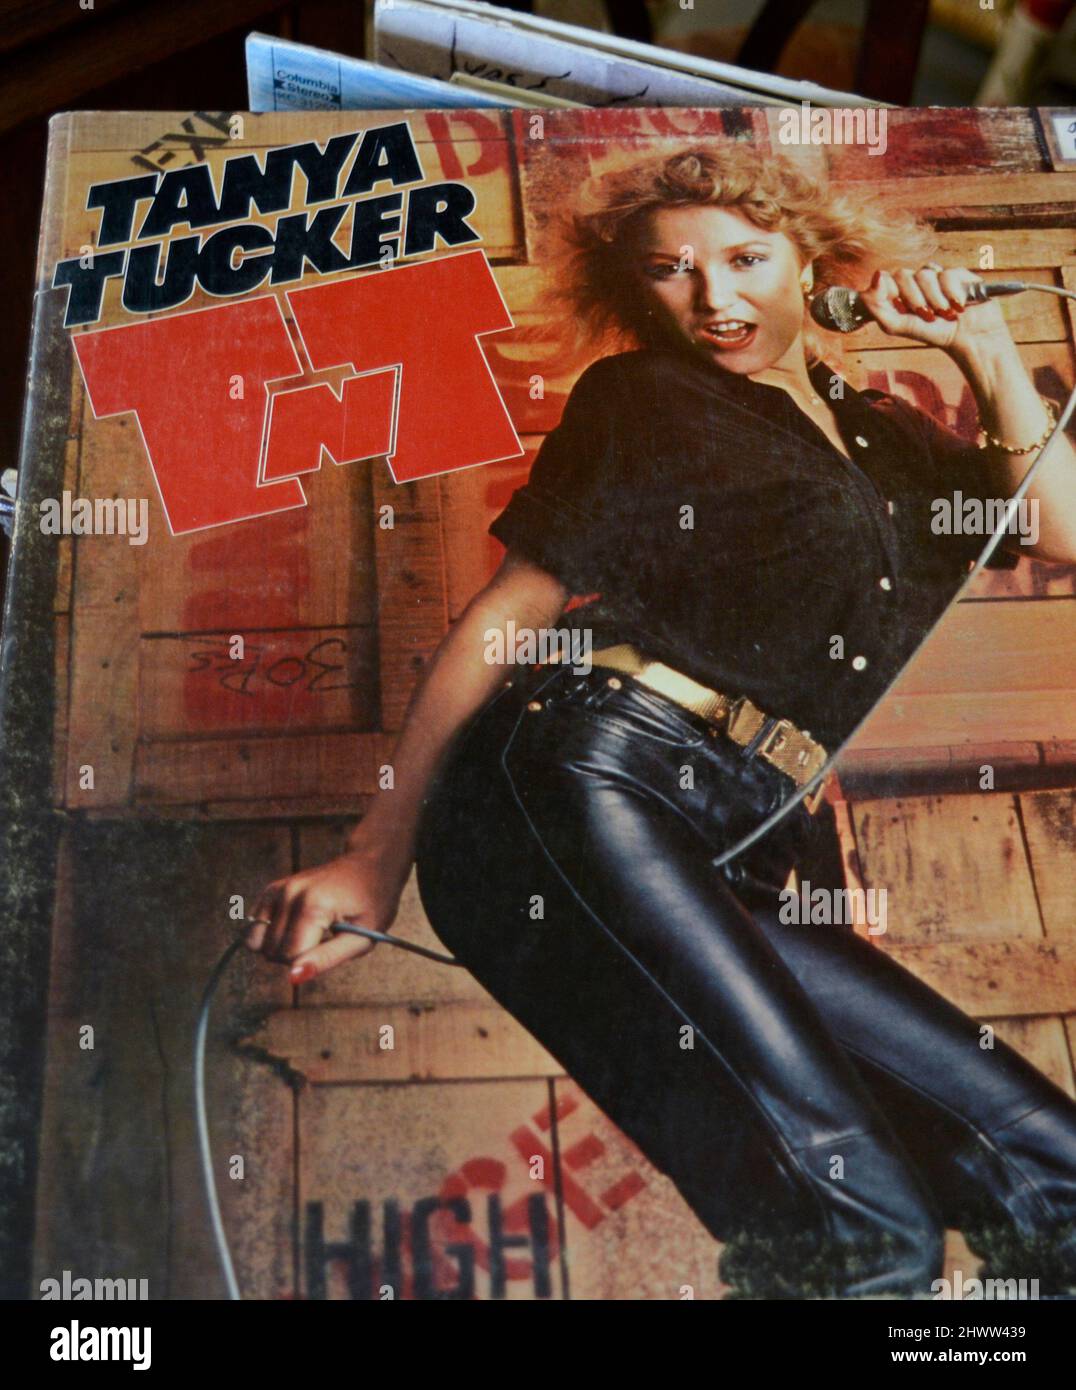 Eine Kopie des von der Sängerin Tanya Tucker für den Grammy nominierten Plattenalbums aus dem Jahr 1978 mit dem Titel „TNT“, das in einem Antiquitätengeschäft verkauft wird. Stockfoto